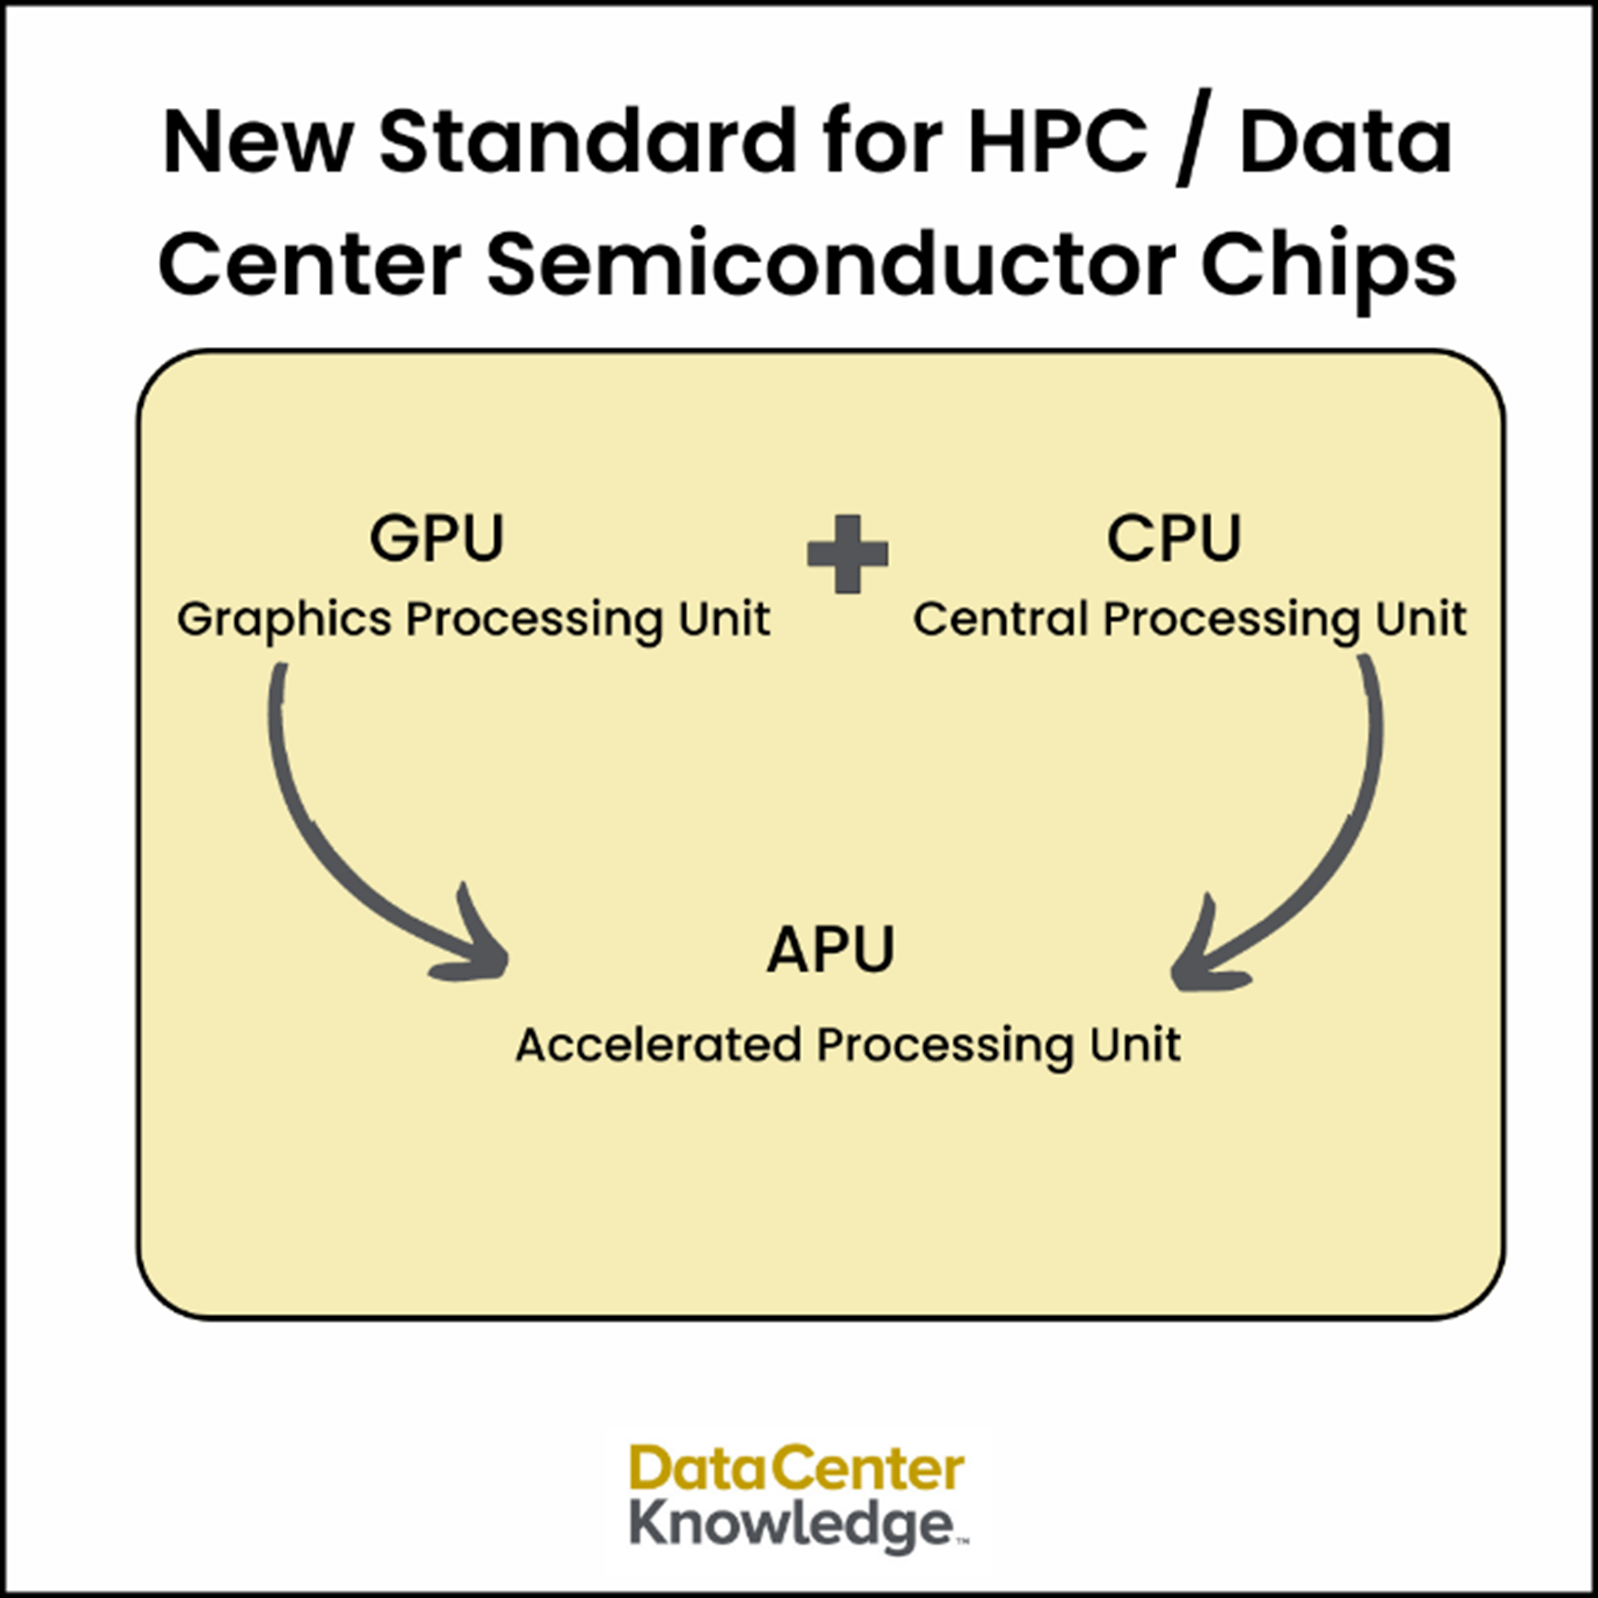 استاندارد جدید برای تراشه های نیمه هادی HPC / Data Center